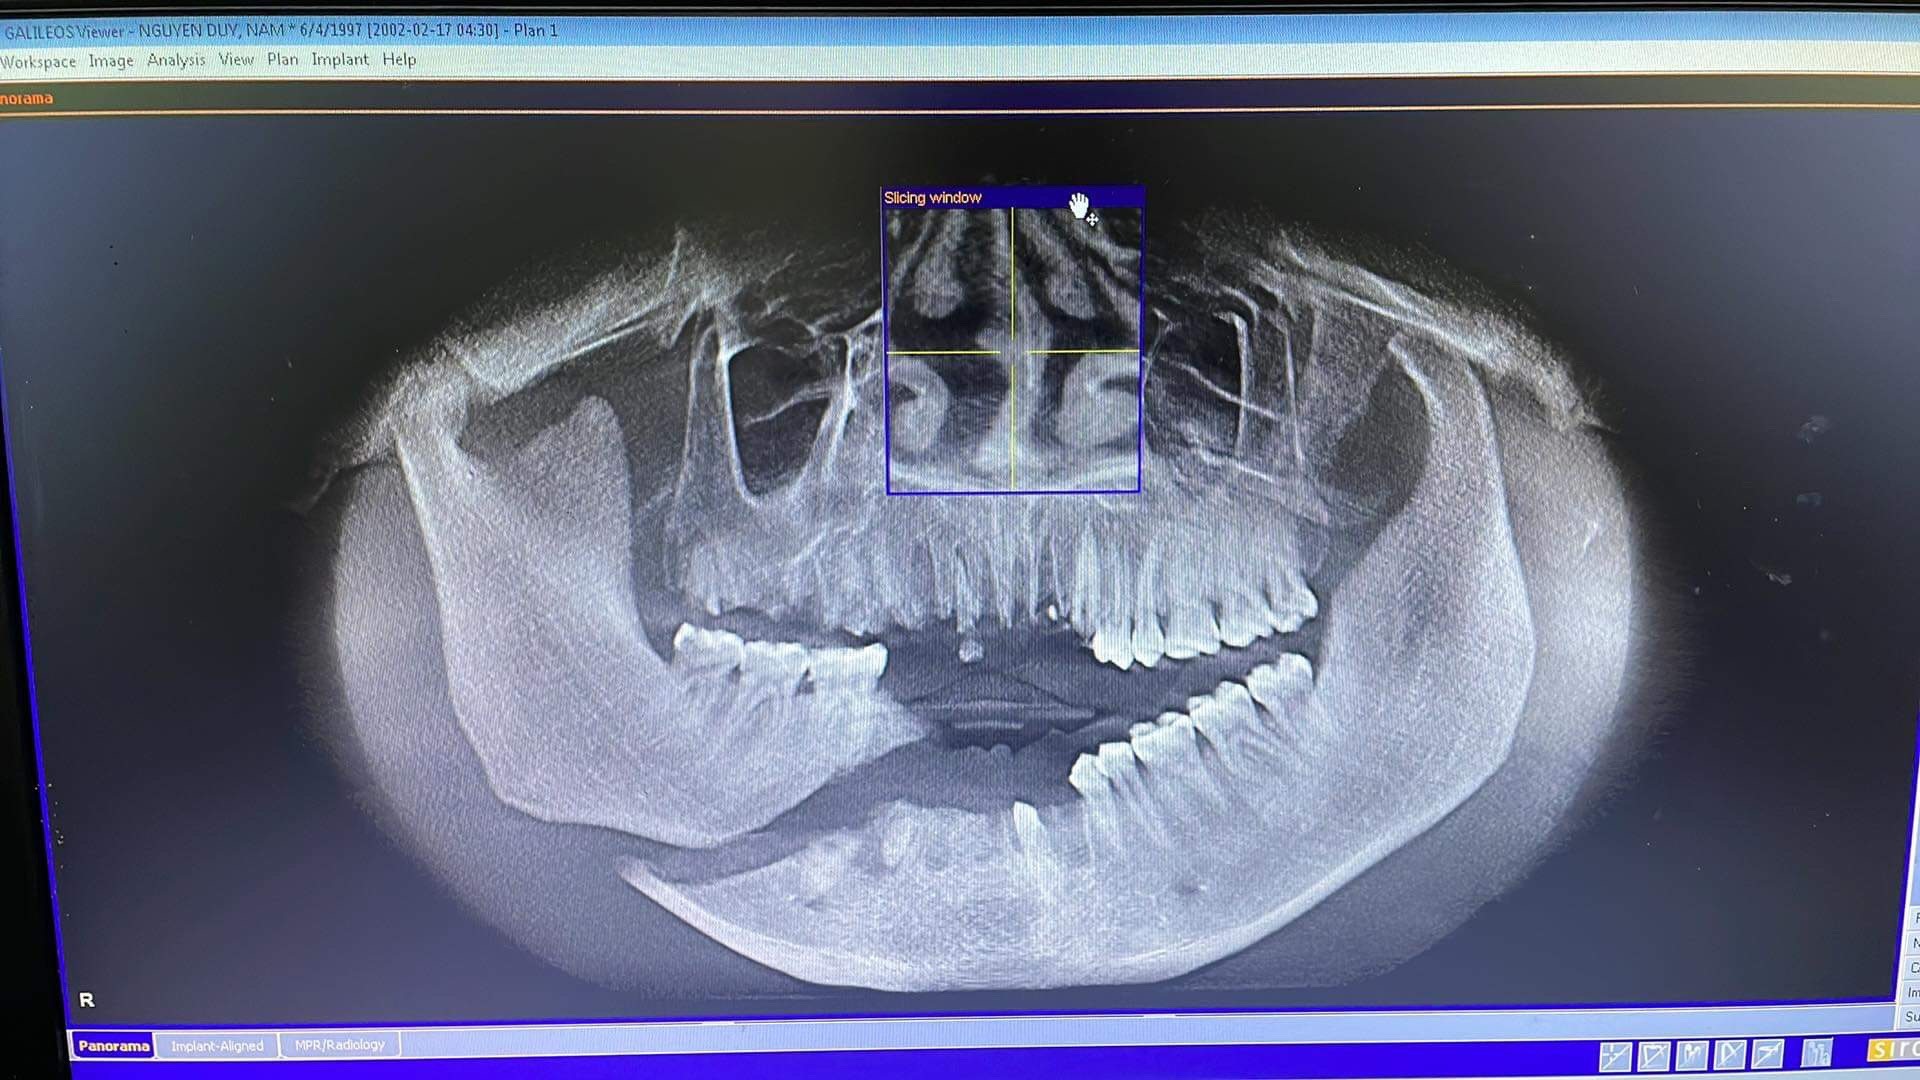 Hình ảnh xương hàm vỡ của thanh niên 32 tuổi sau khi bị tai nạn thang máy trong nhà. Ảnh Bệnh viện cung cấp